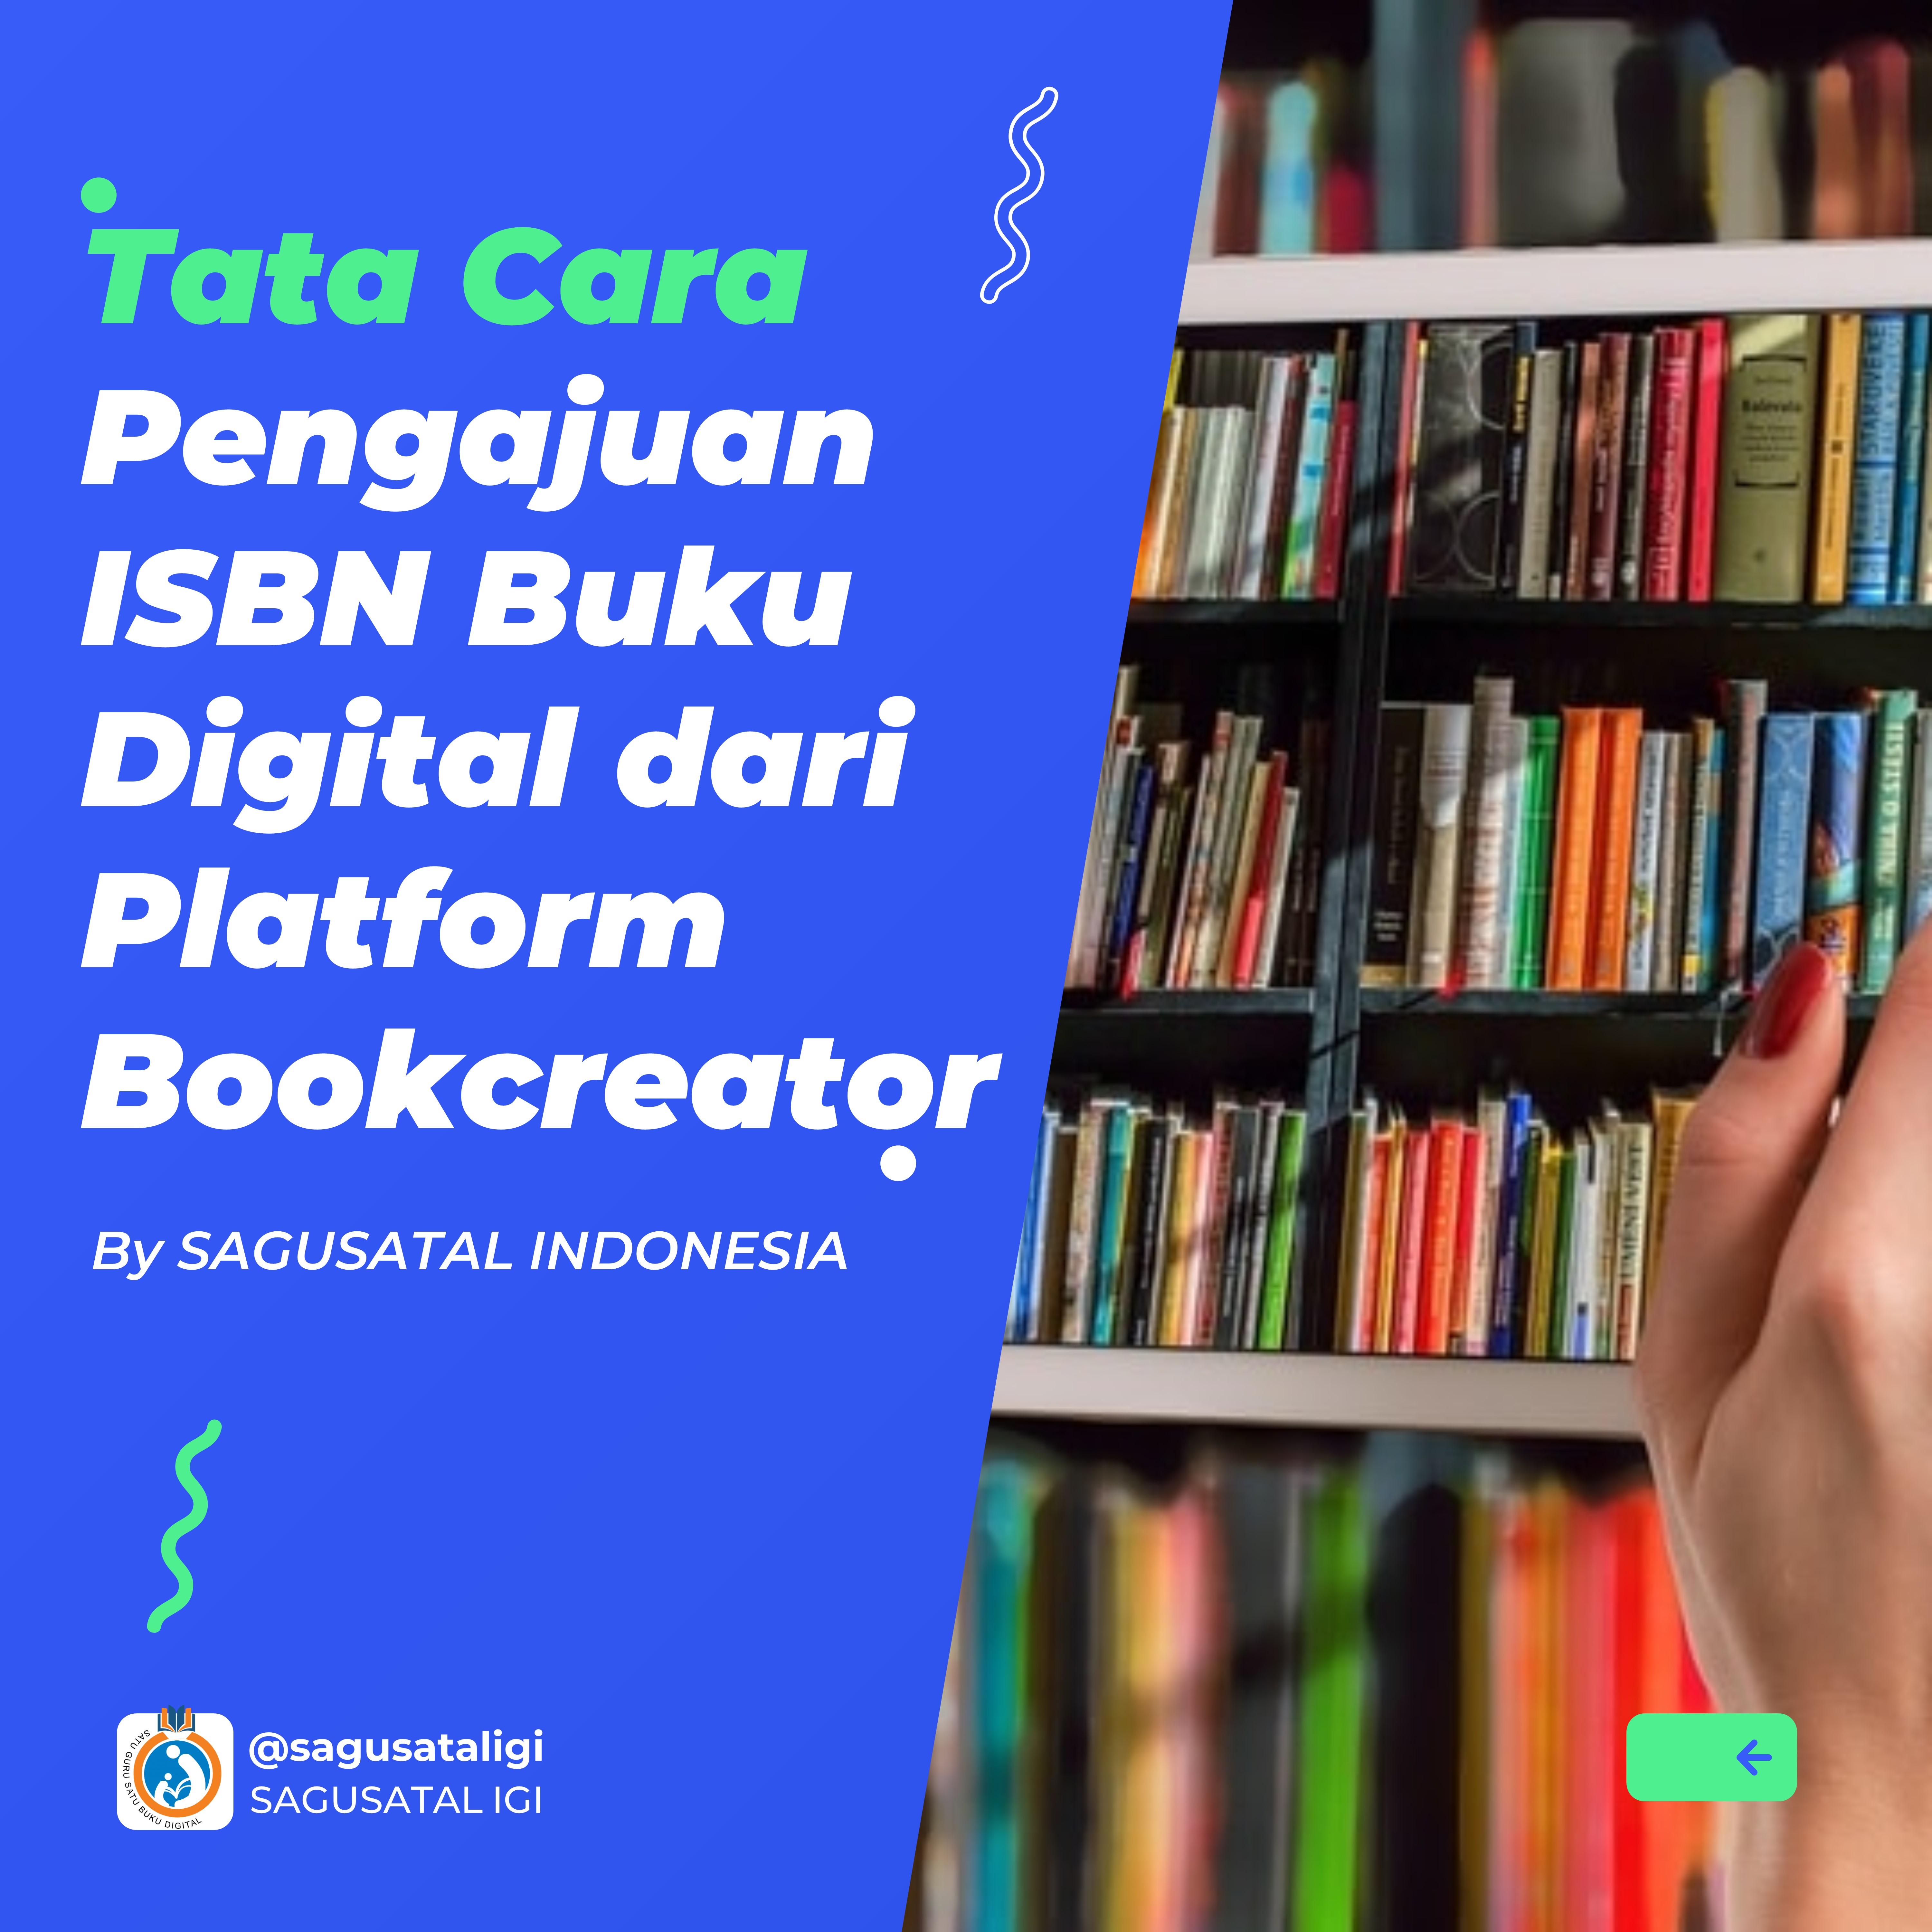 Tata Cara Pengajuan ISBN Buku Digital dari Platform Bookcreator